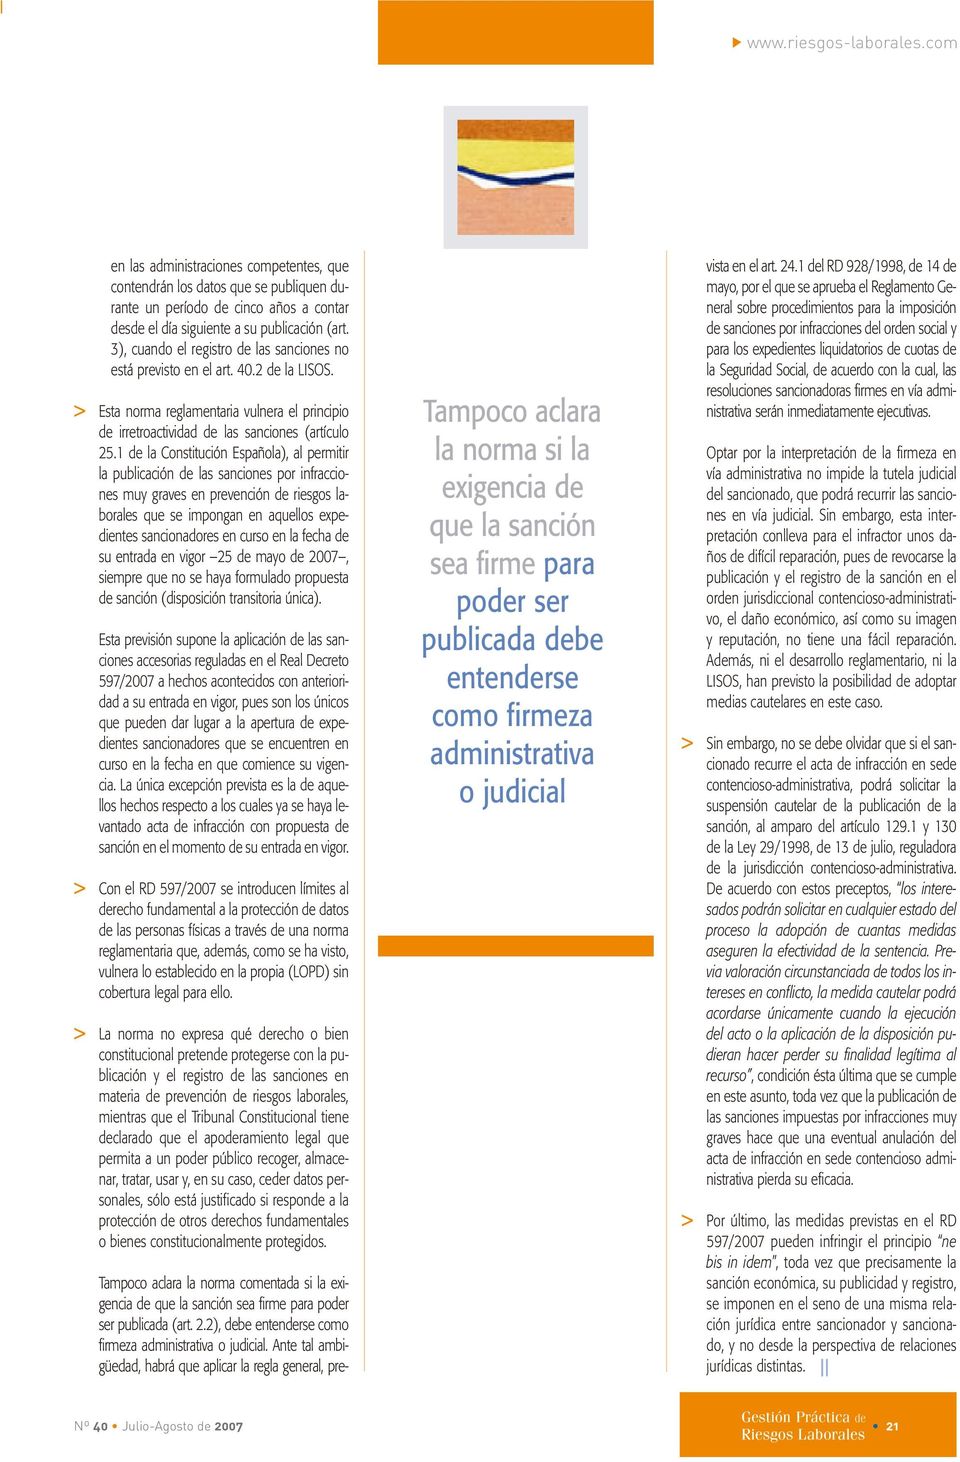 1 de la Constitución Española), al permitir la publicación de las sanciones por infracciones muy graves en prevención de riesgos laborales que se impongan en aquellos expedientes sancionadores en